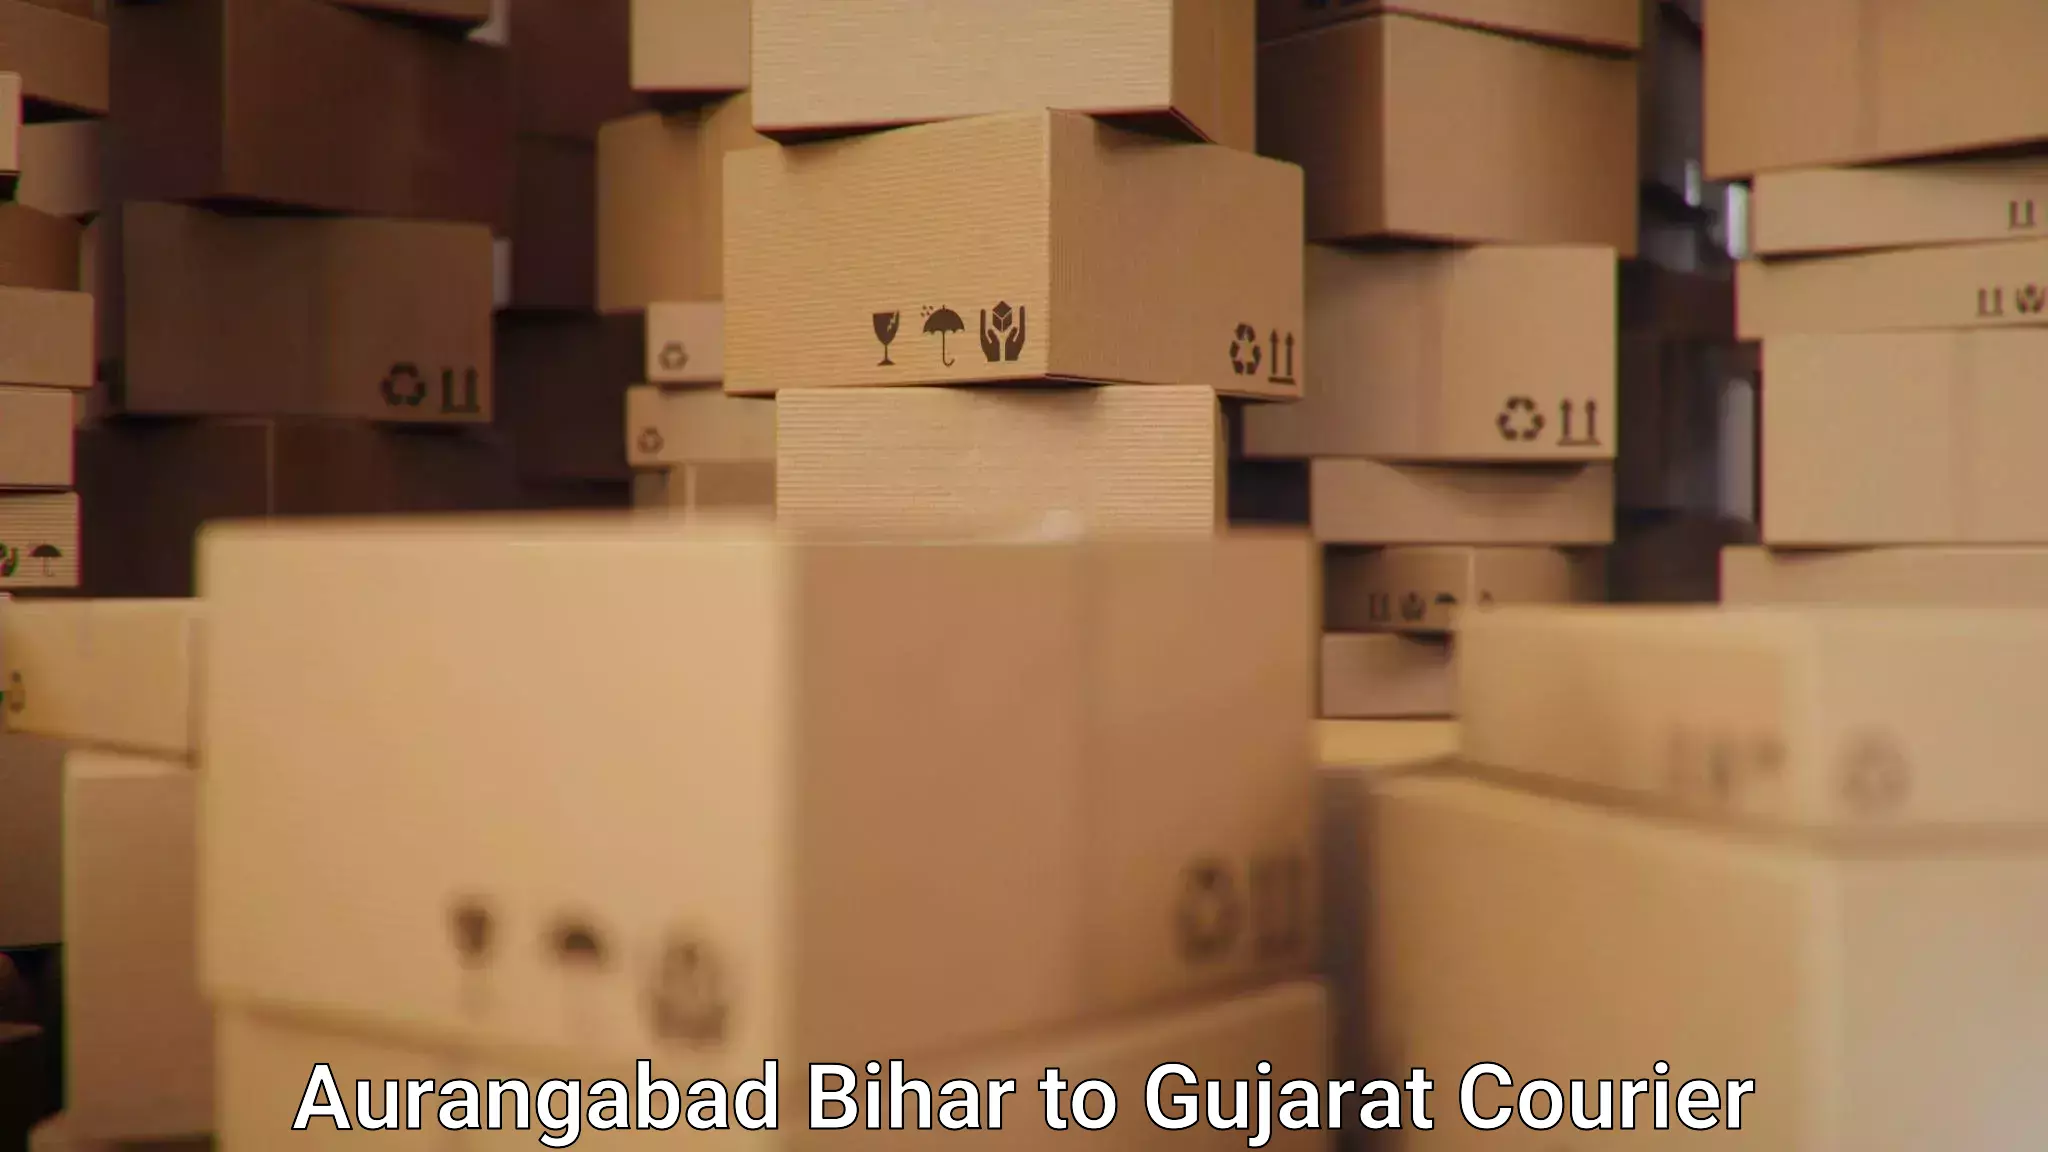 Courier rate comparison Aurangabad Bihar to Dabhoi